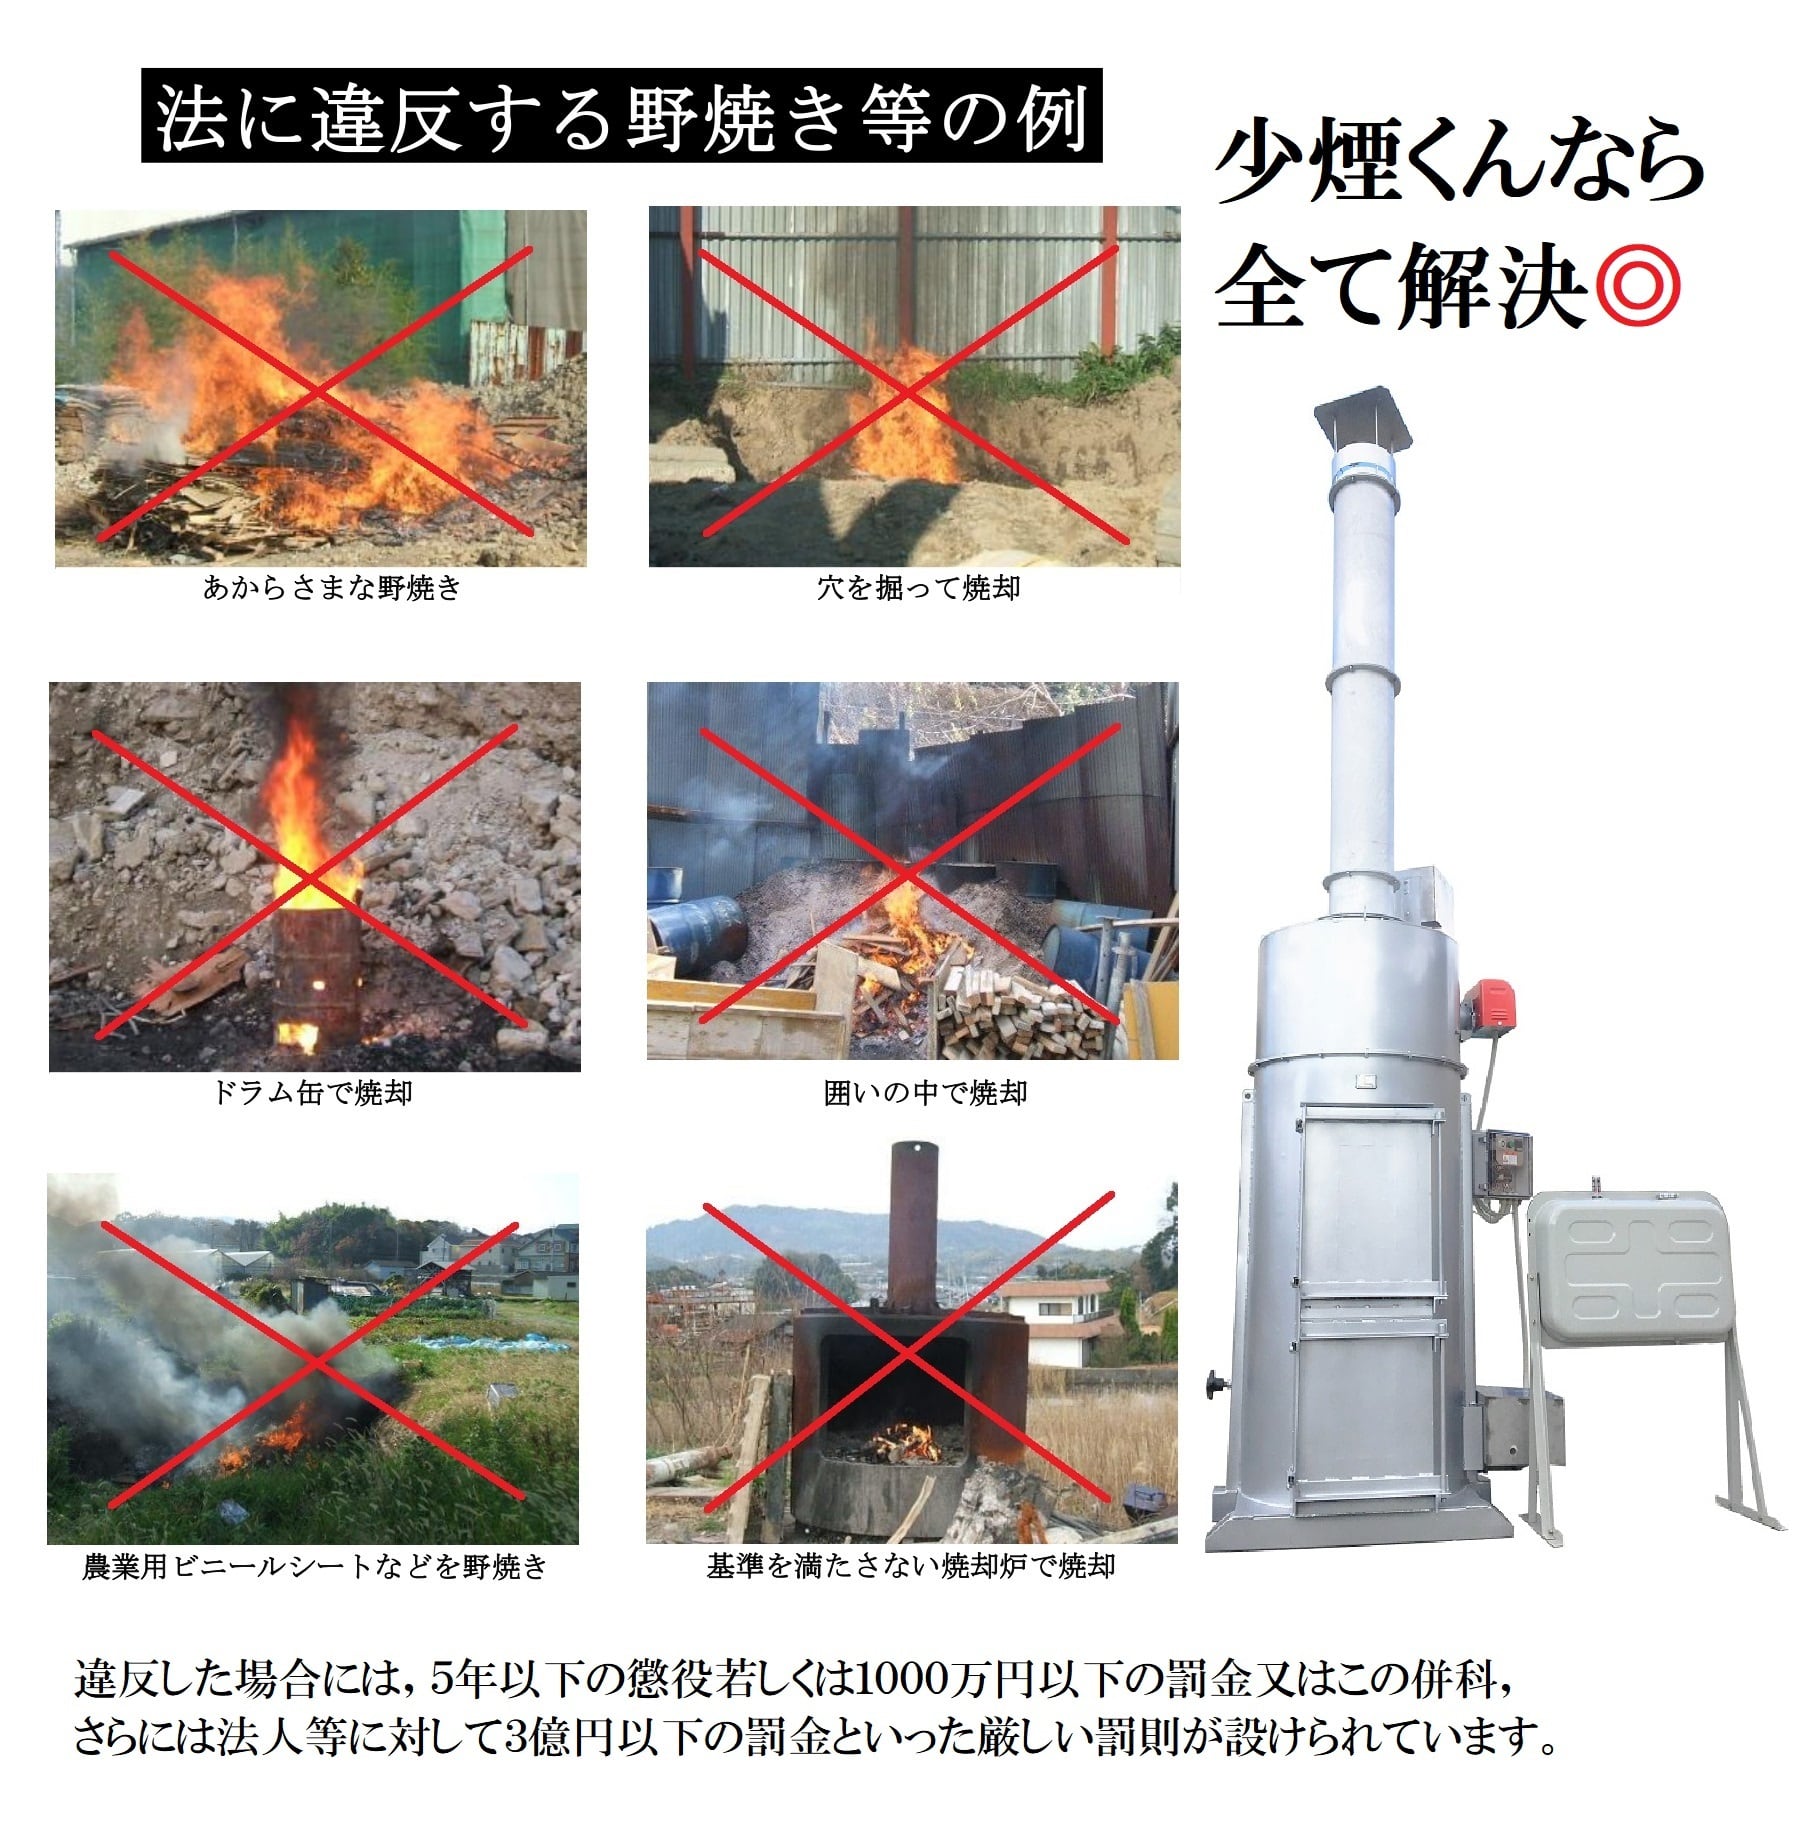 小型焼却炉 SC300BSF | アナログシステム 小型焼却炉の販売